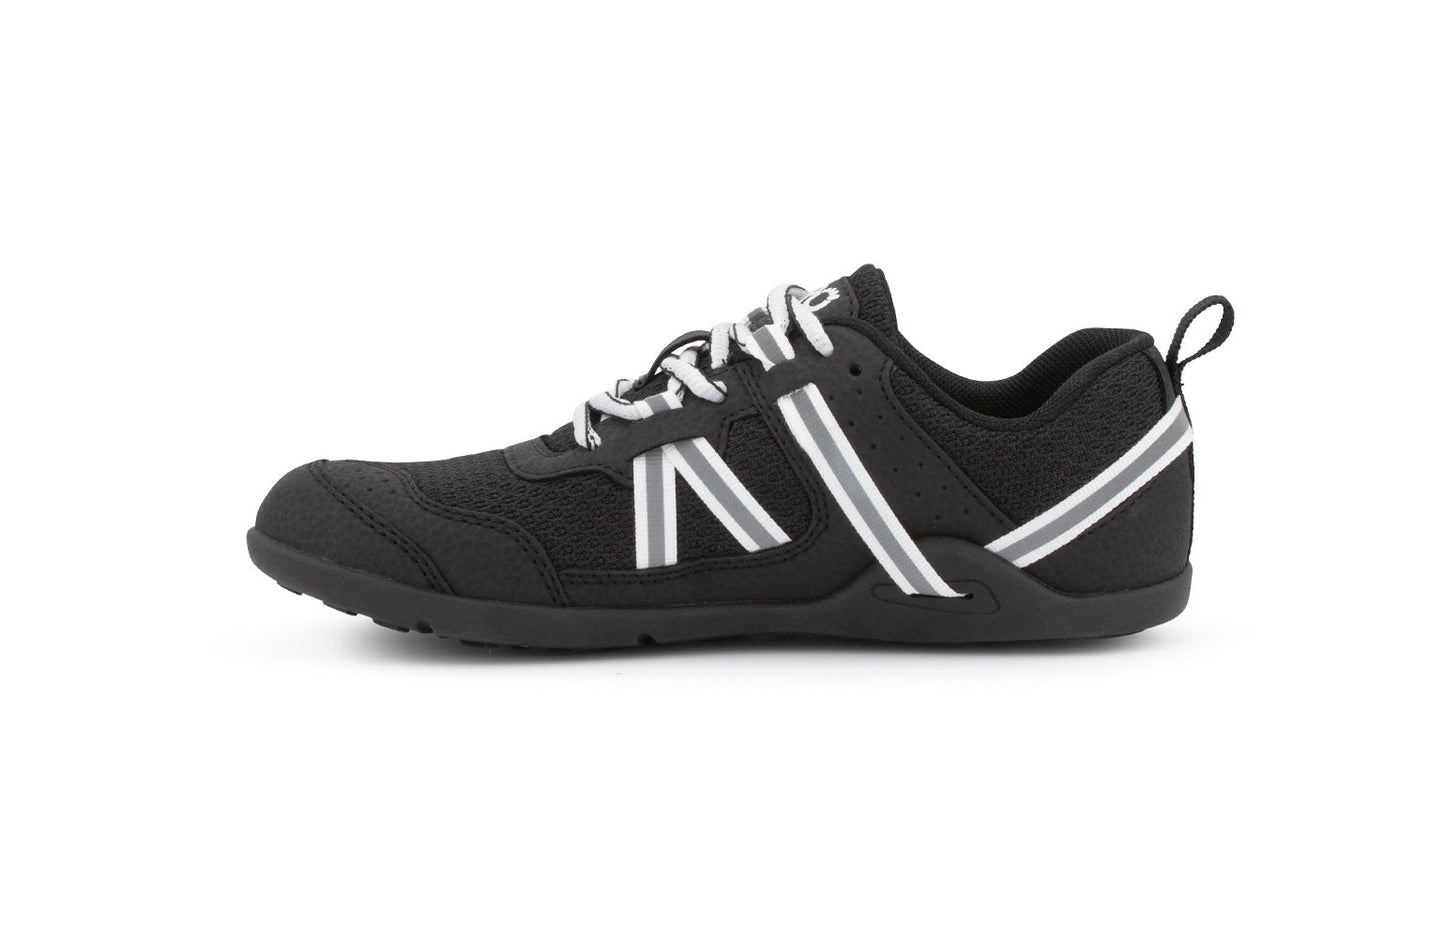 Xero Shoes Prio Kids barfods træningssko/sneakers til børn i farven black/white, inderside